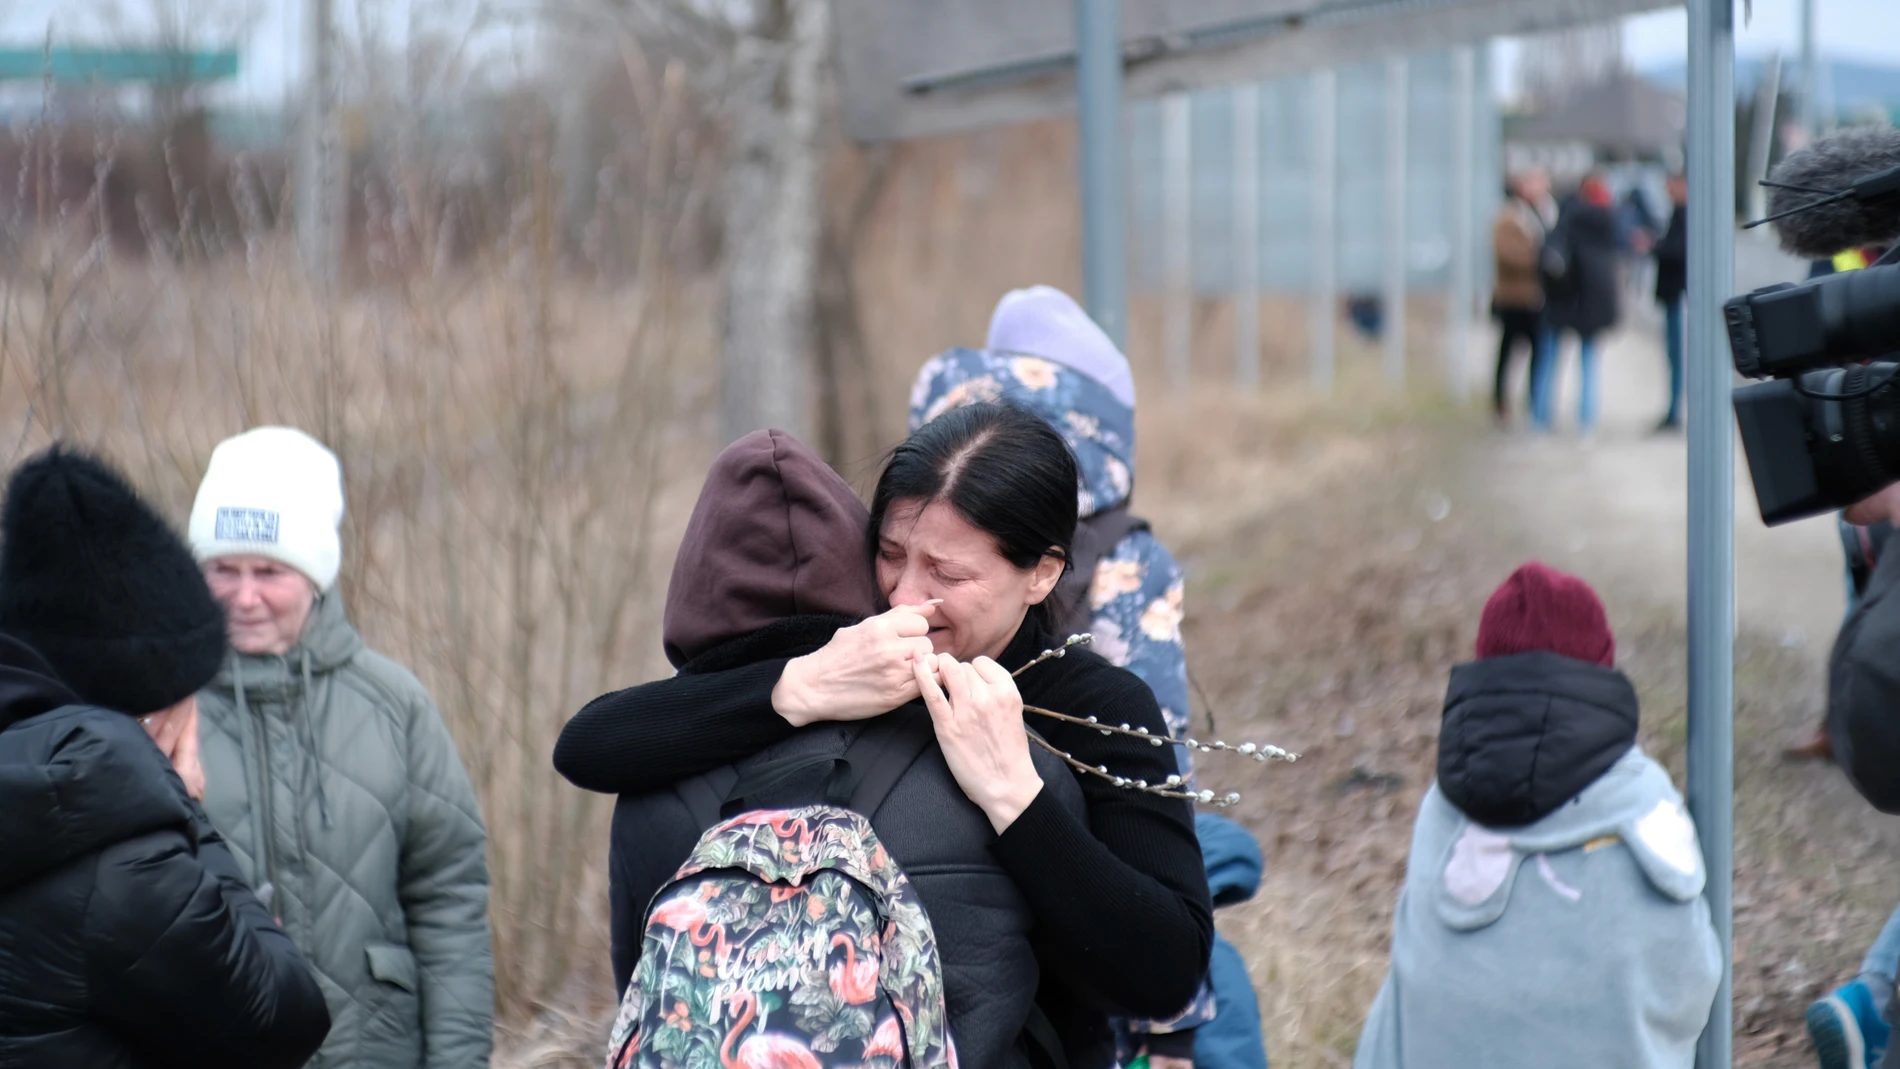 Cómo se preparan los países vecinos de Ucrania para acoger a los refugiados que huyen de la guerra